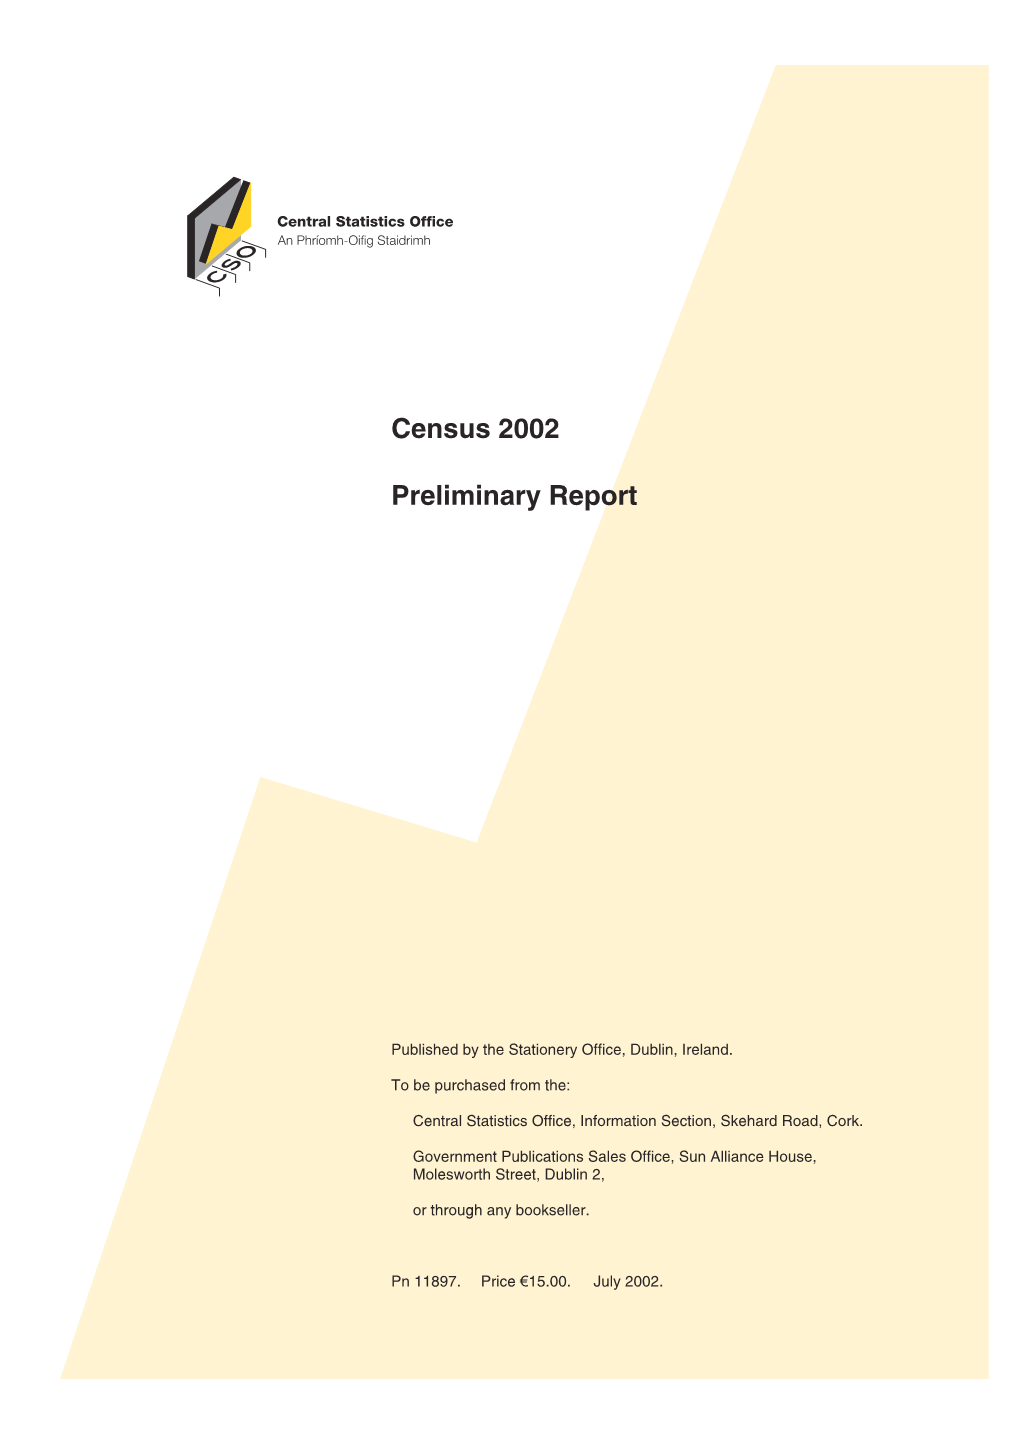 Census 2002 Preliminary Report